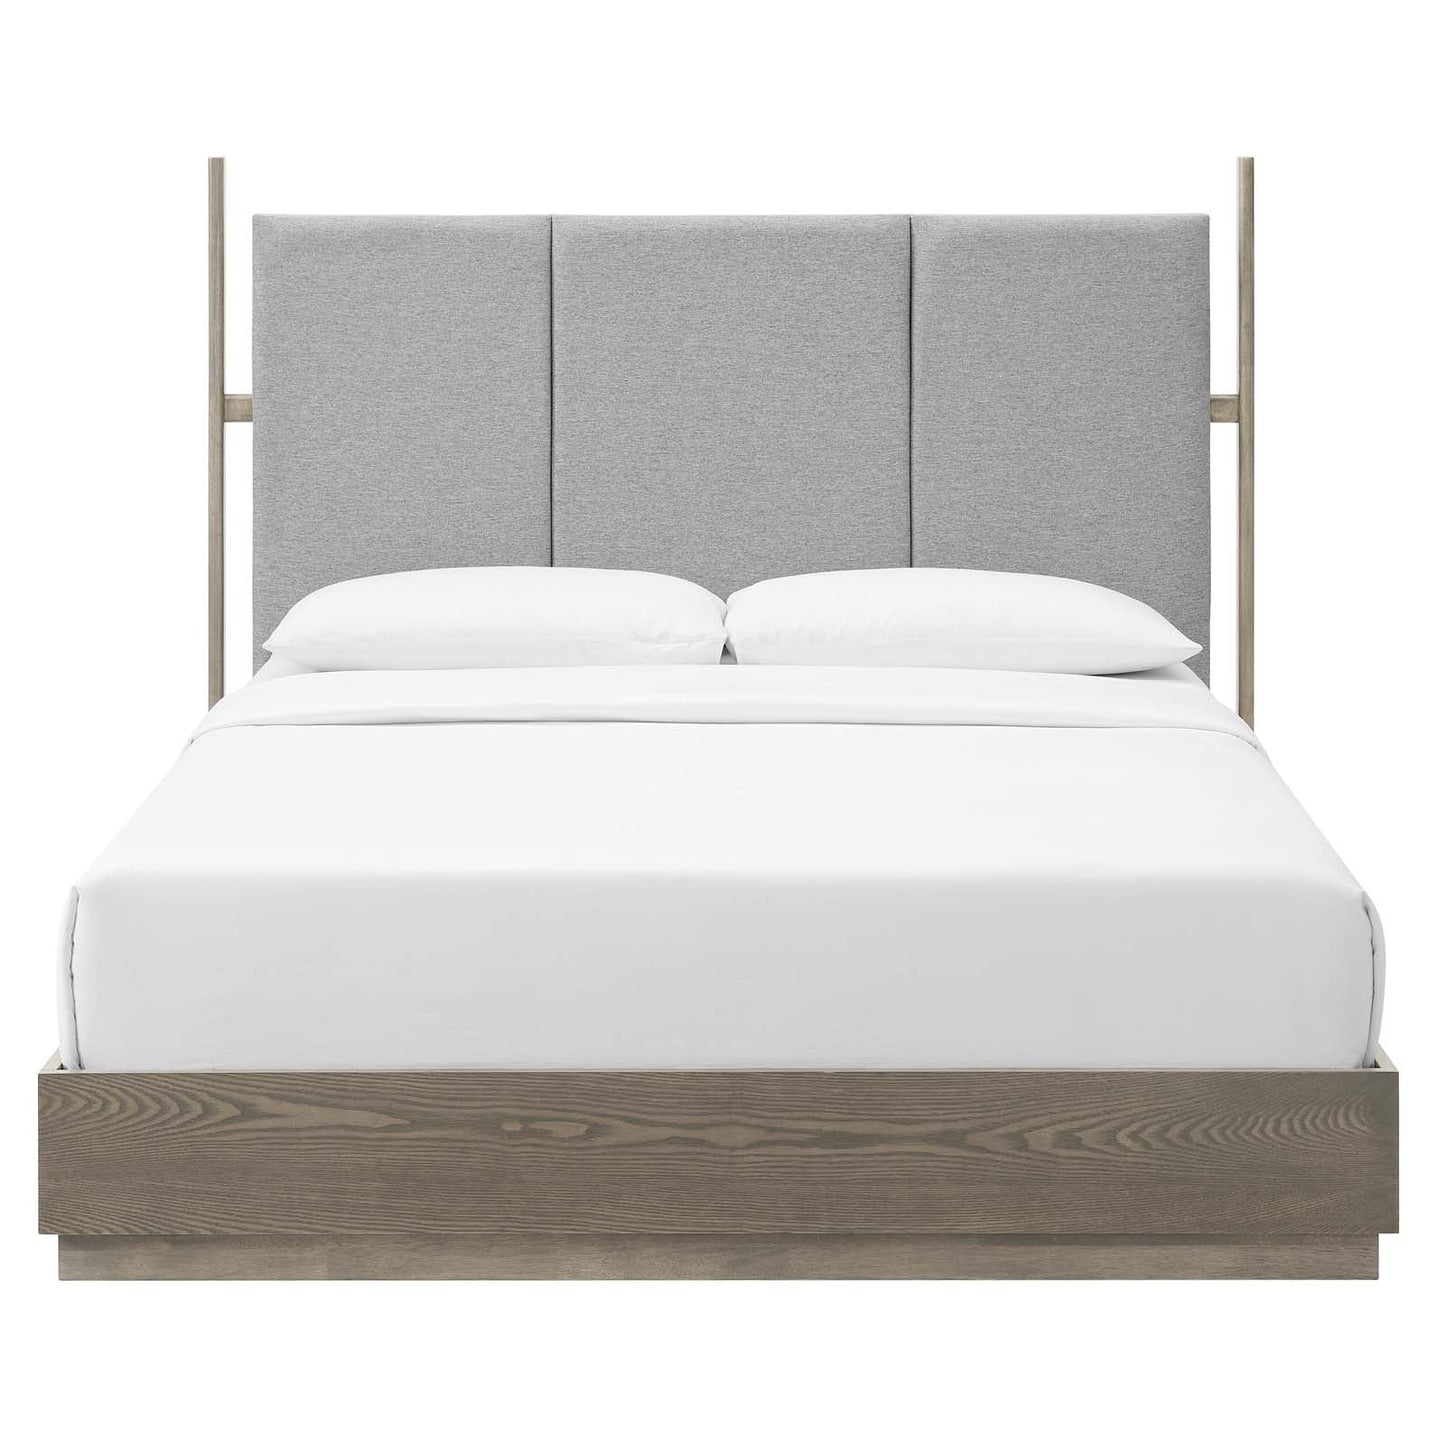 Merri 3 Piece Upholstered Bedroom Set